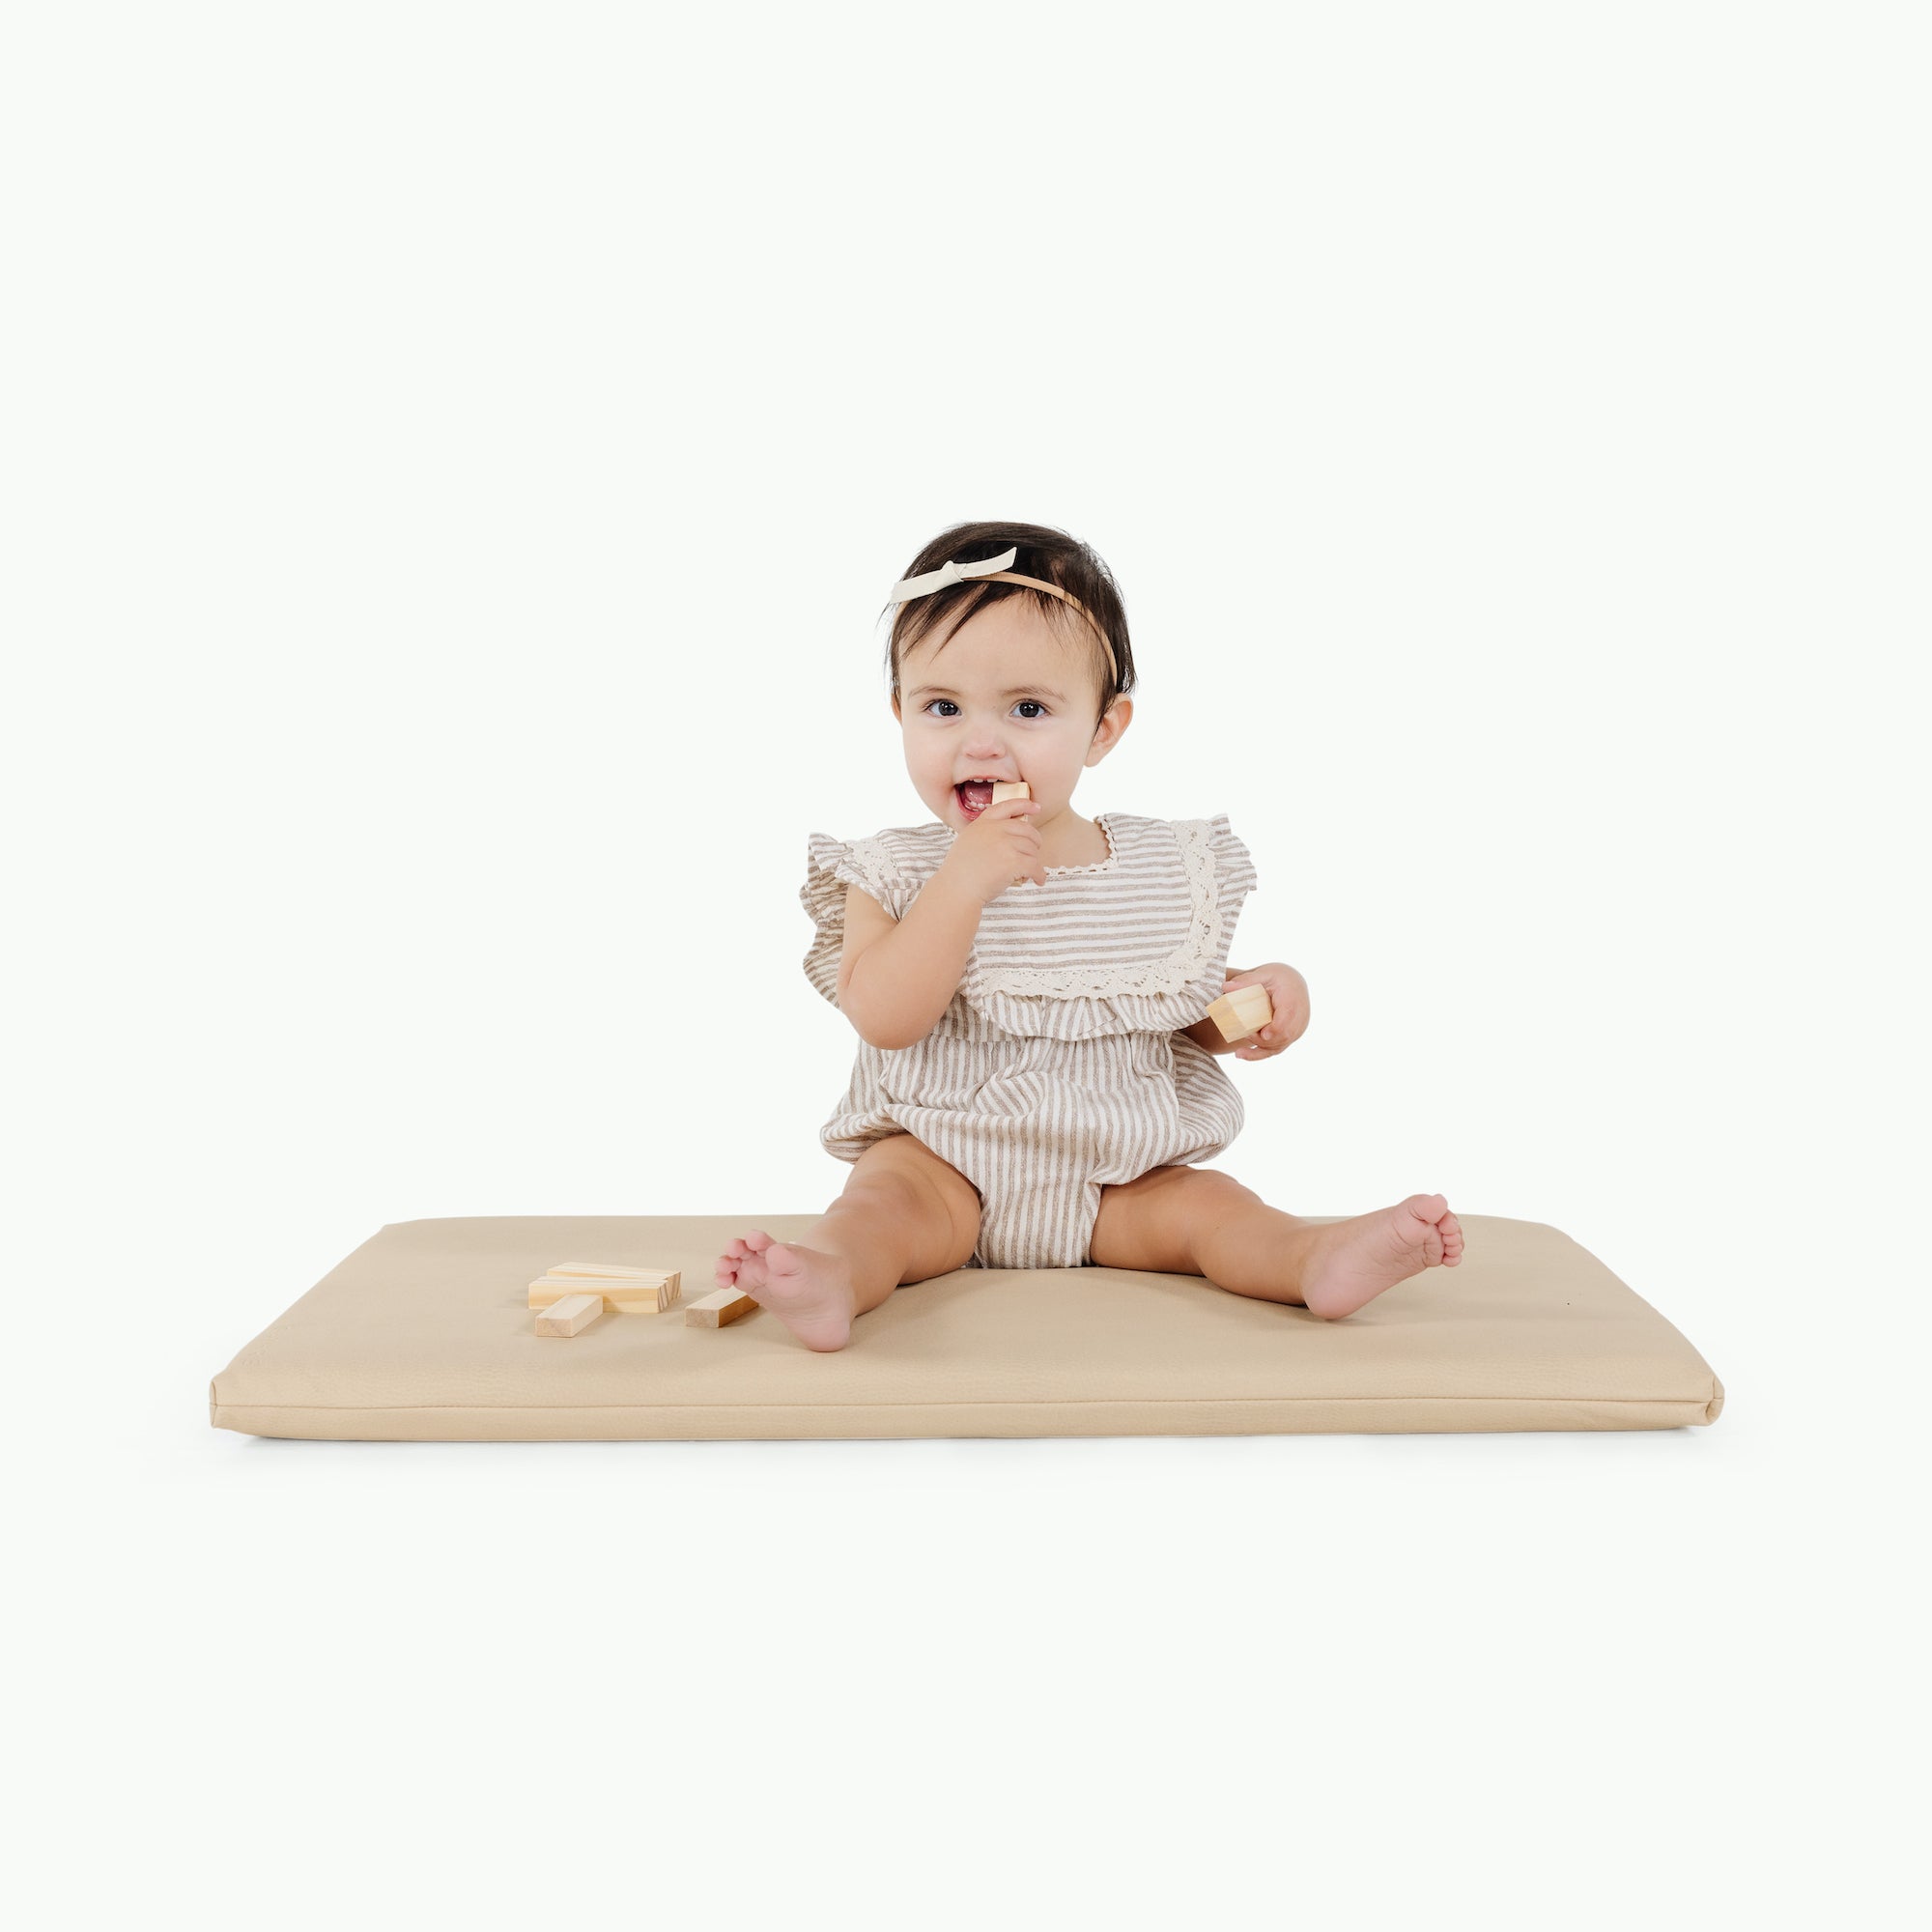 Créme@little girl sitting on padded mat